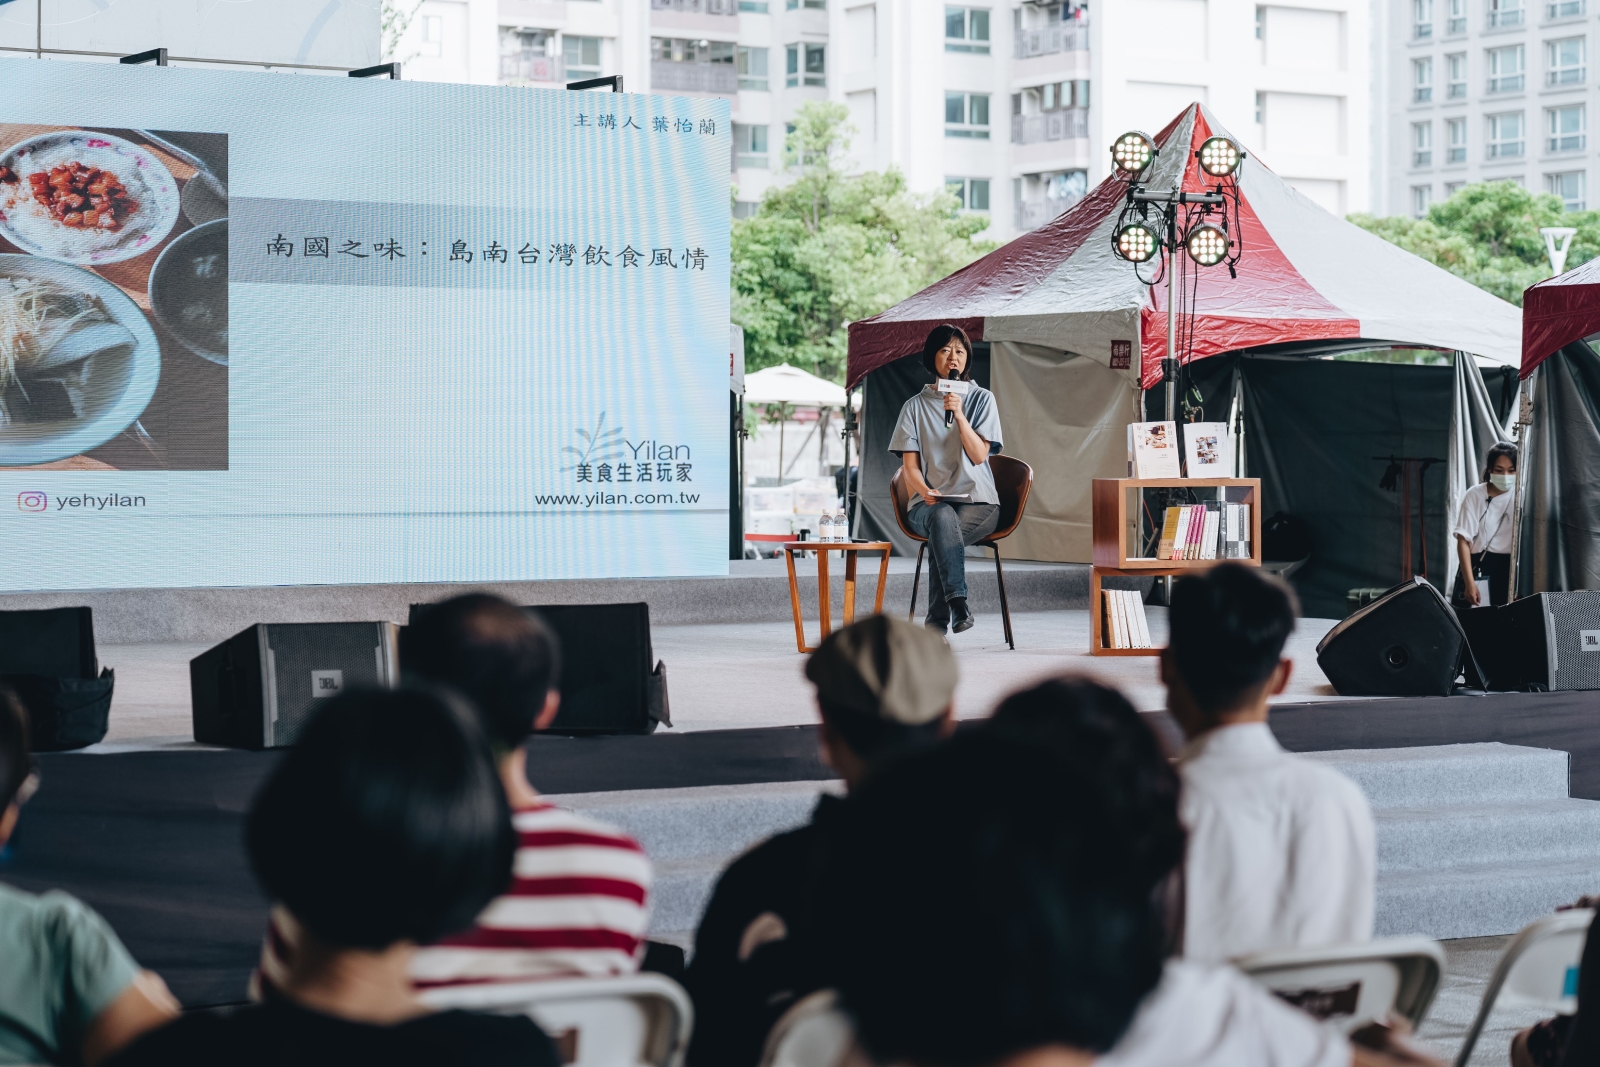 葉怡蘭作家出席分享南台灣的飲食風貌